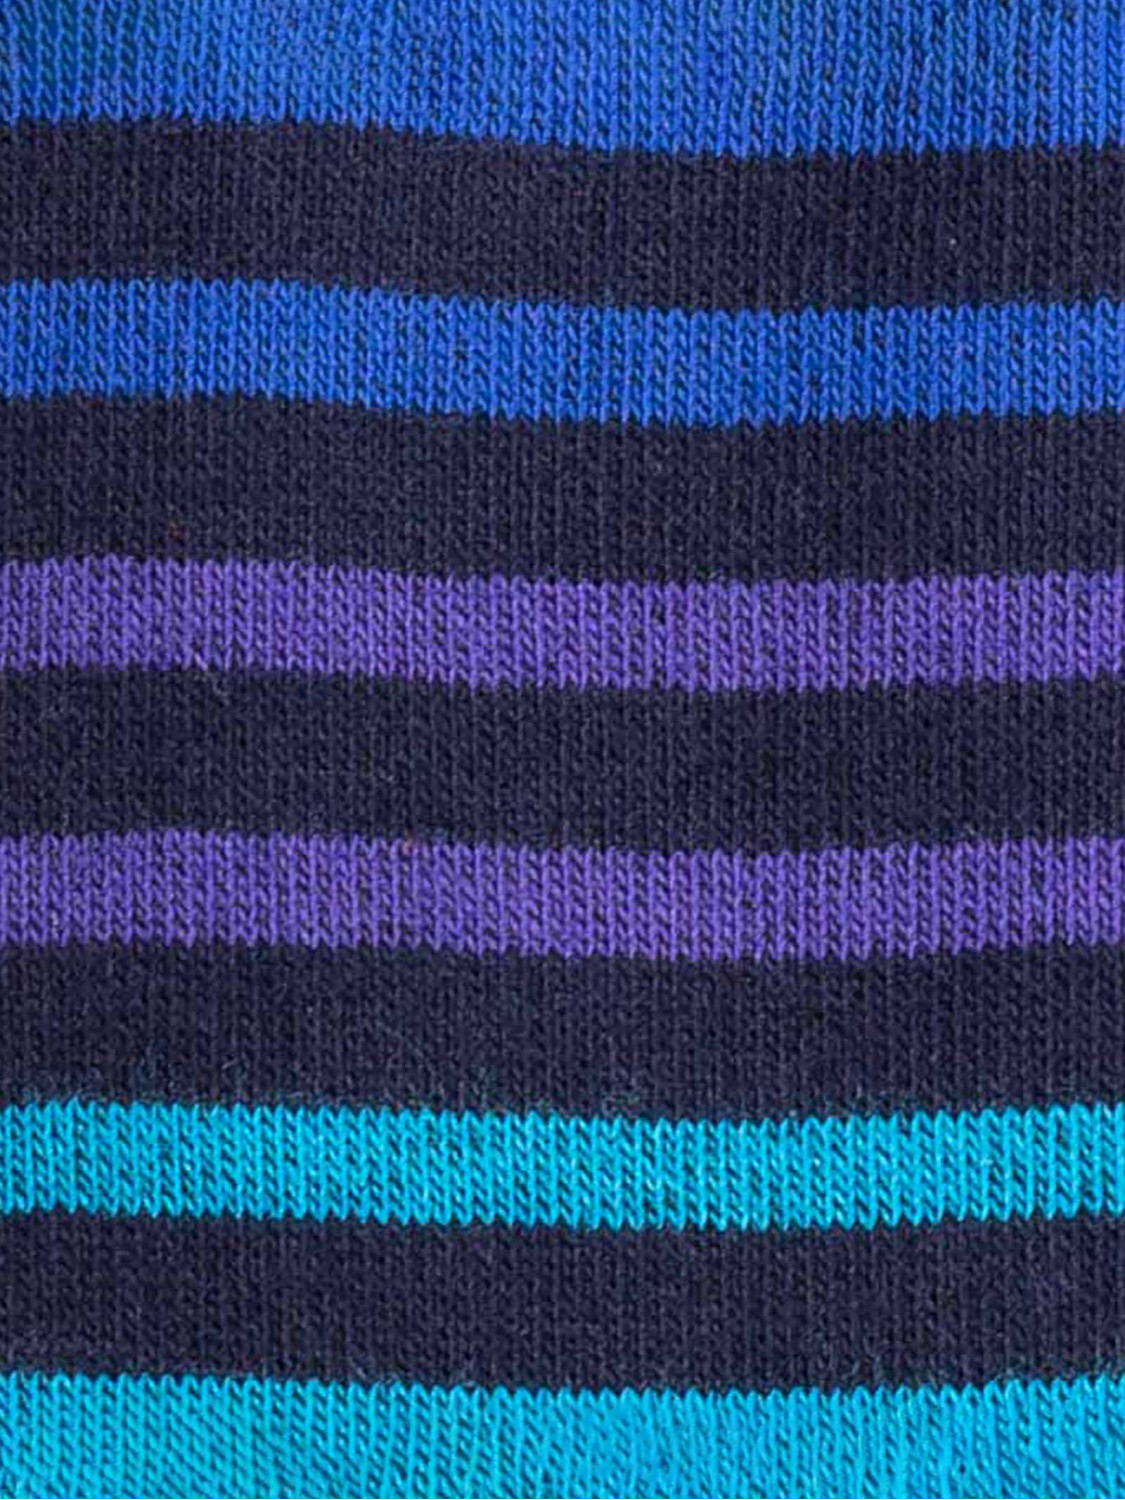 Multicolor stripes pattern Men's Crew Socks